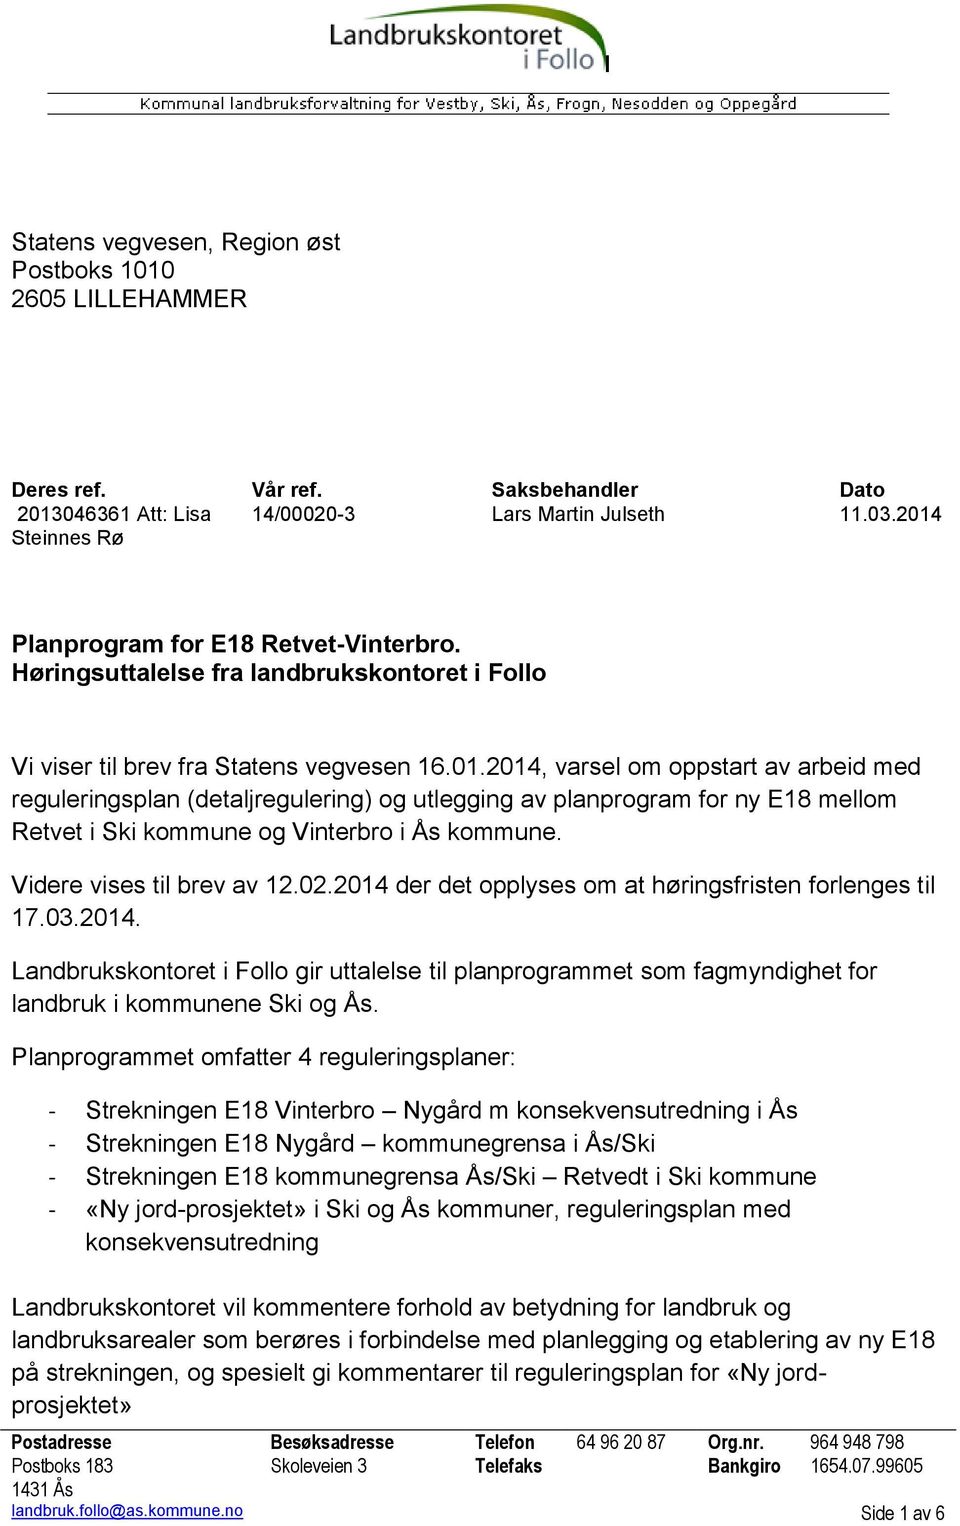 Videre vises til brev av 12.02.2014 der det opplyses om at høringsfristen forlenges til 17.03.2014. Landbrukskontoret i Follo gir uttalelse til planprogrammet som fagmyndighet for landbruk i kommunene Ski og Ås.